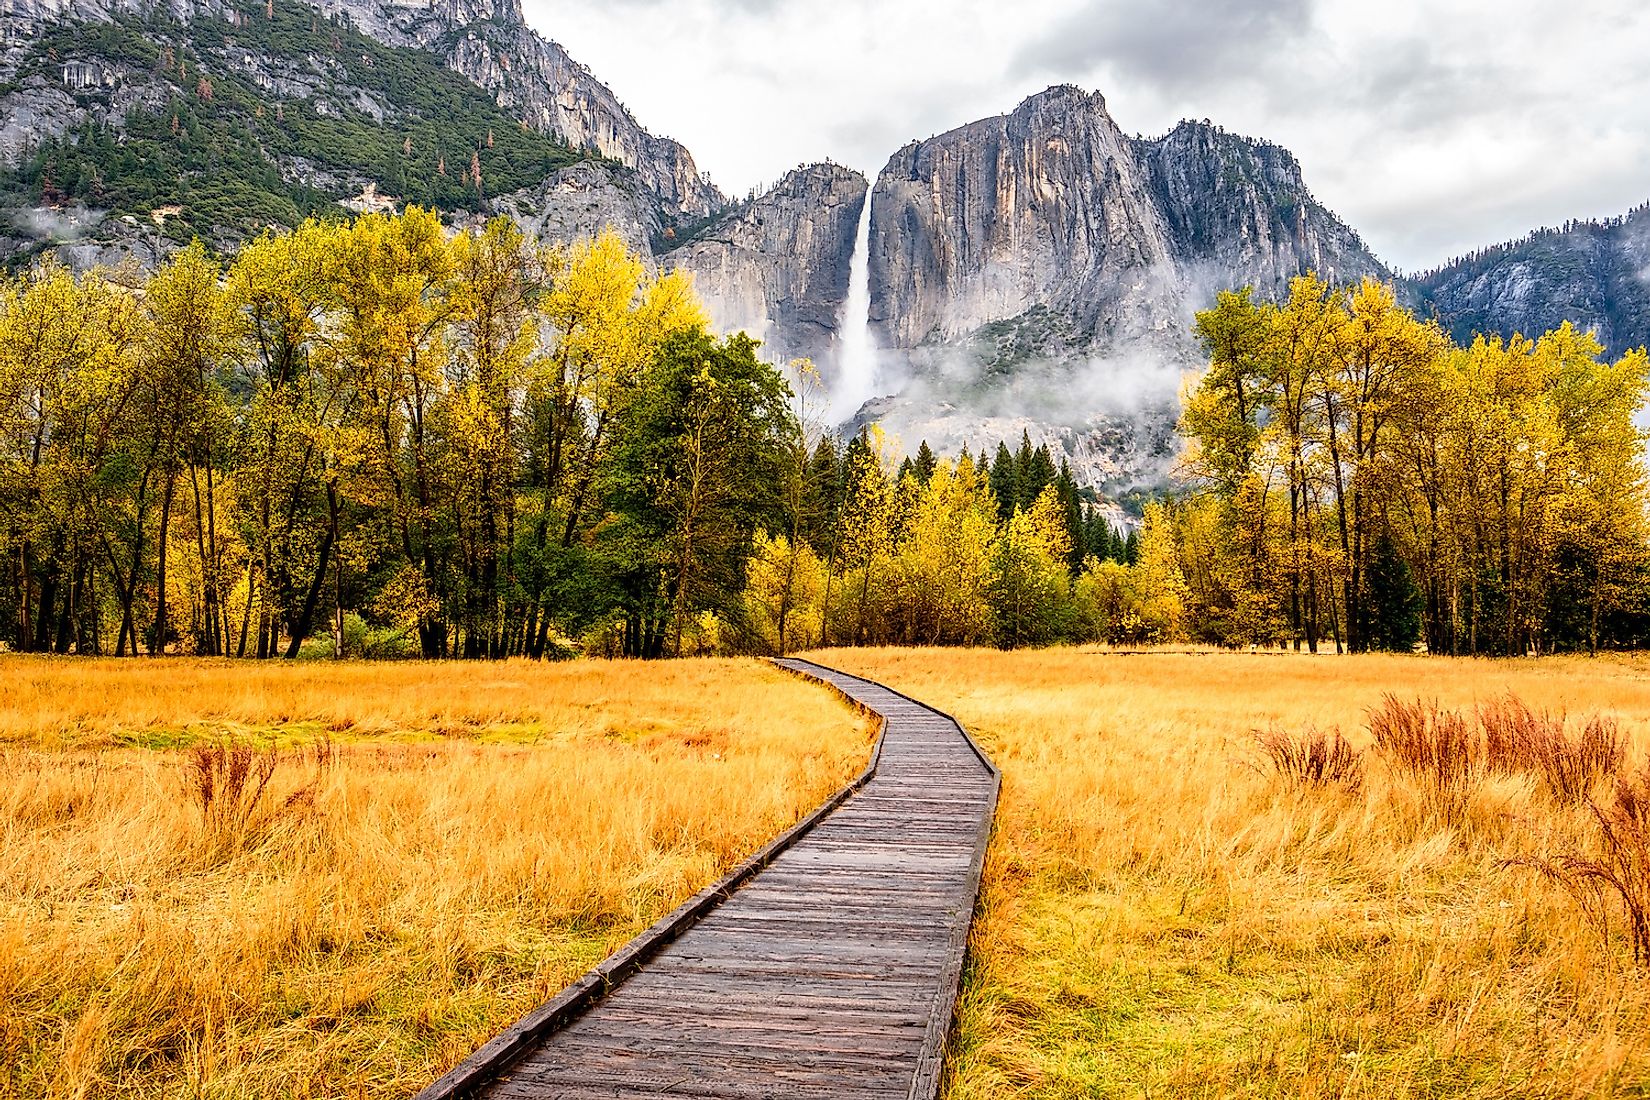 Fall colors in Yosemite National Park.